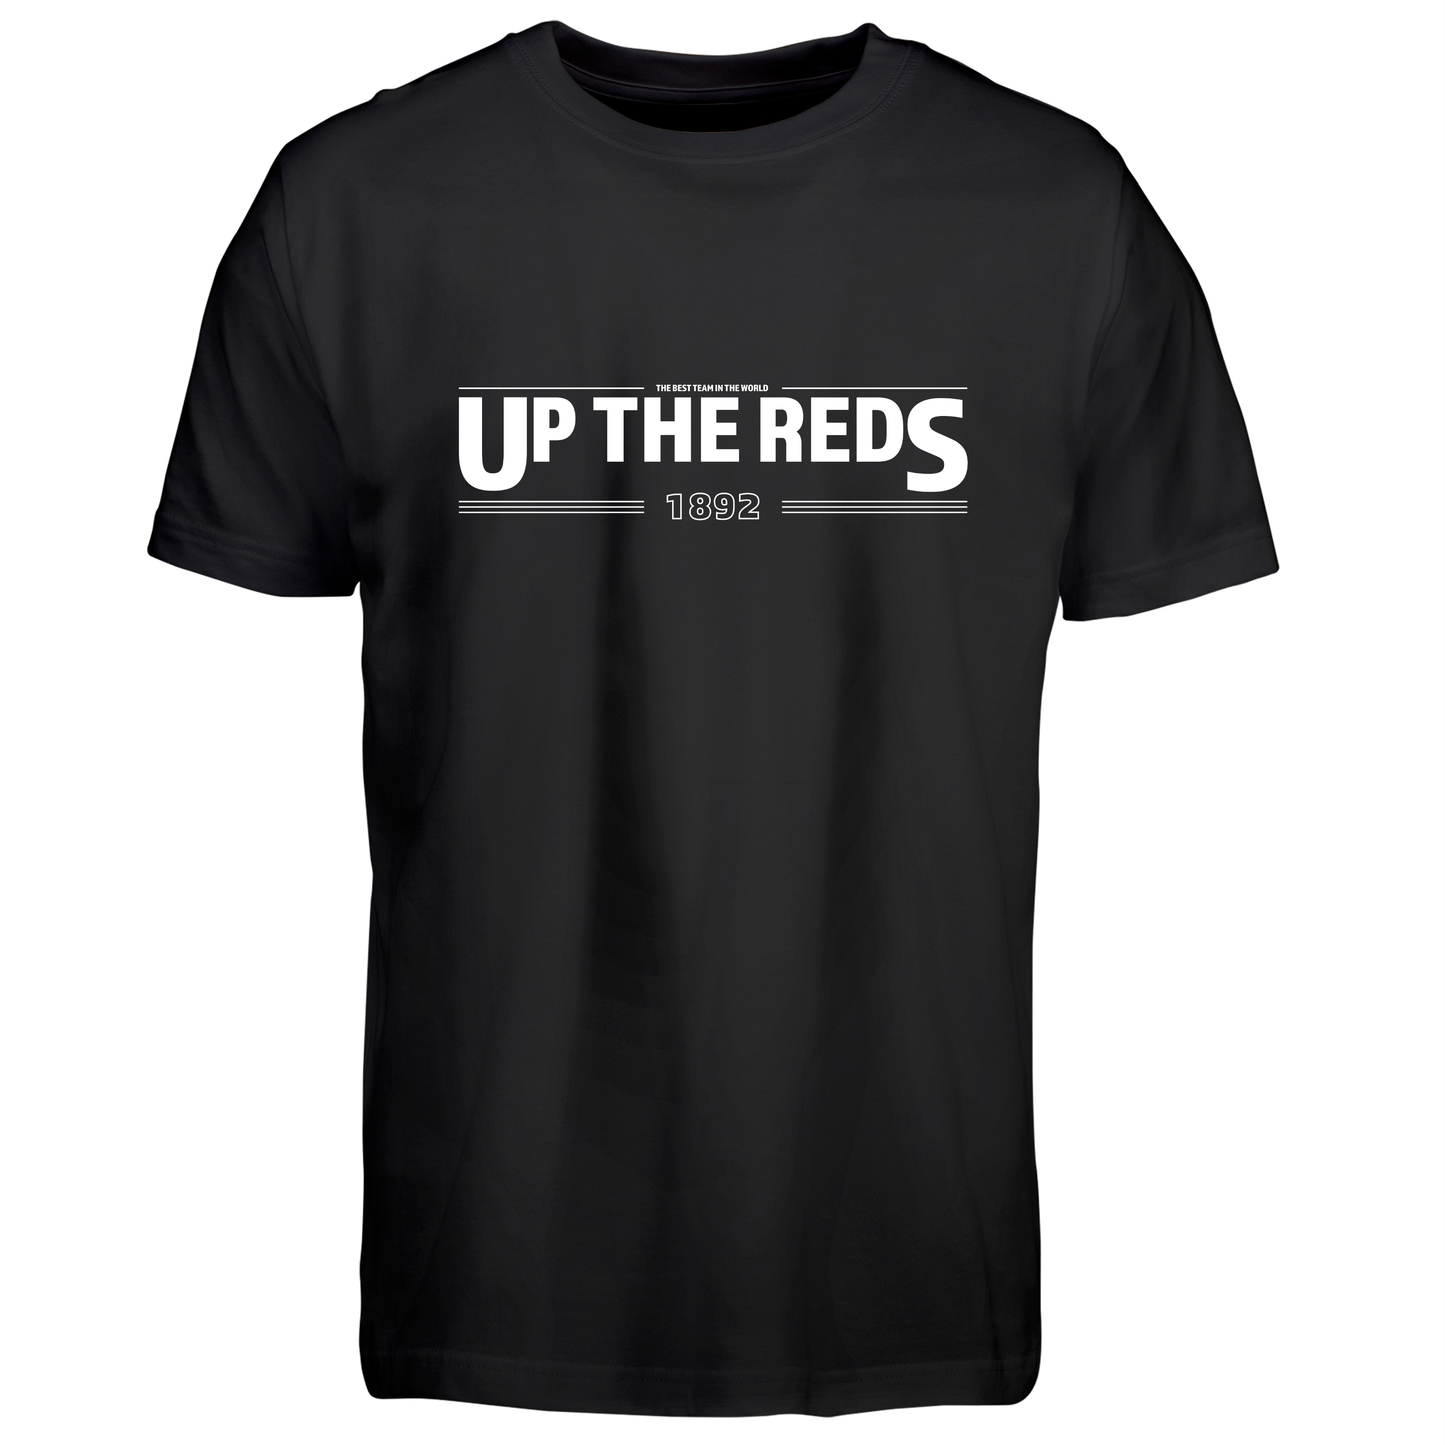 UP THE REDS - T-shirt (Børn)